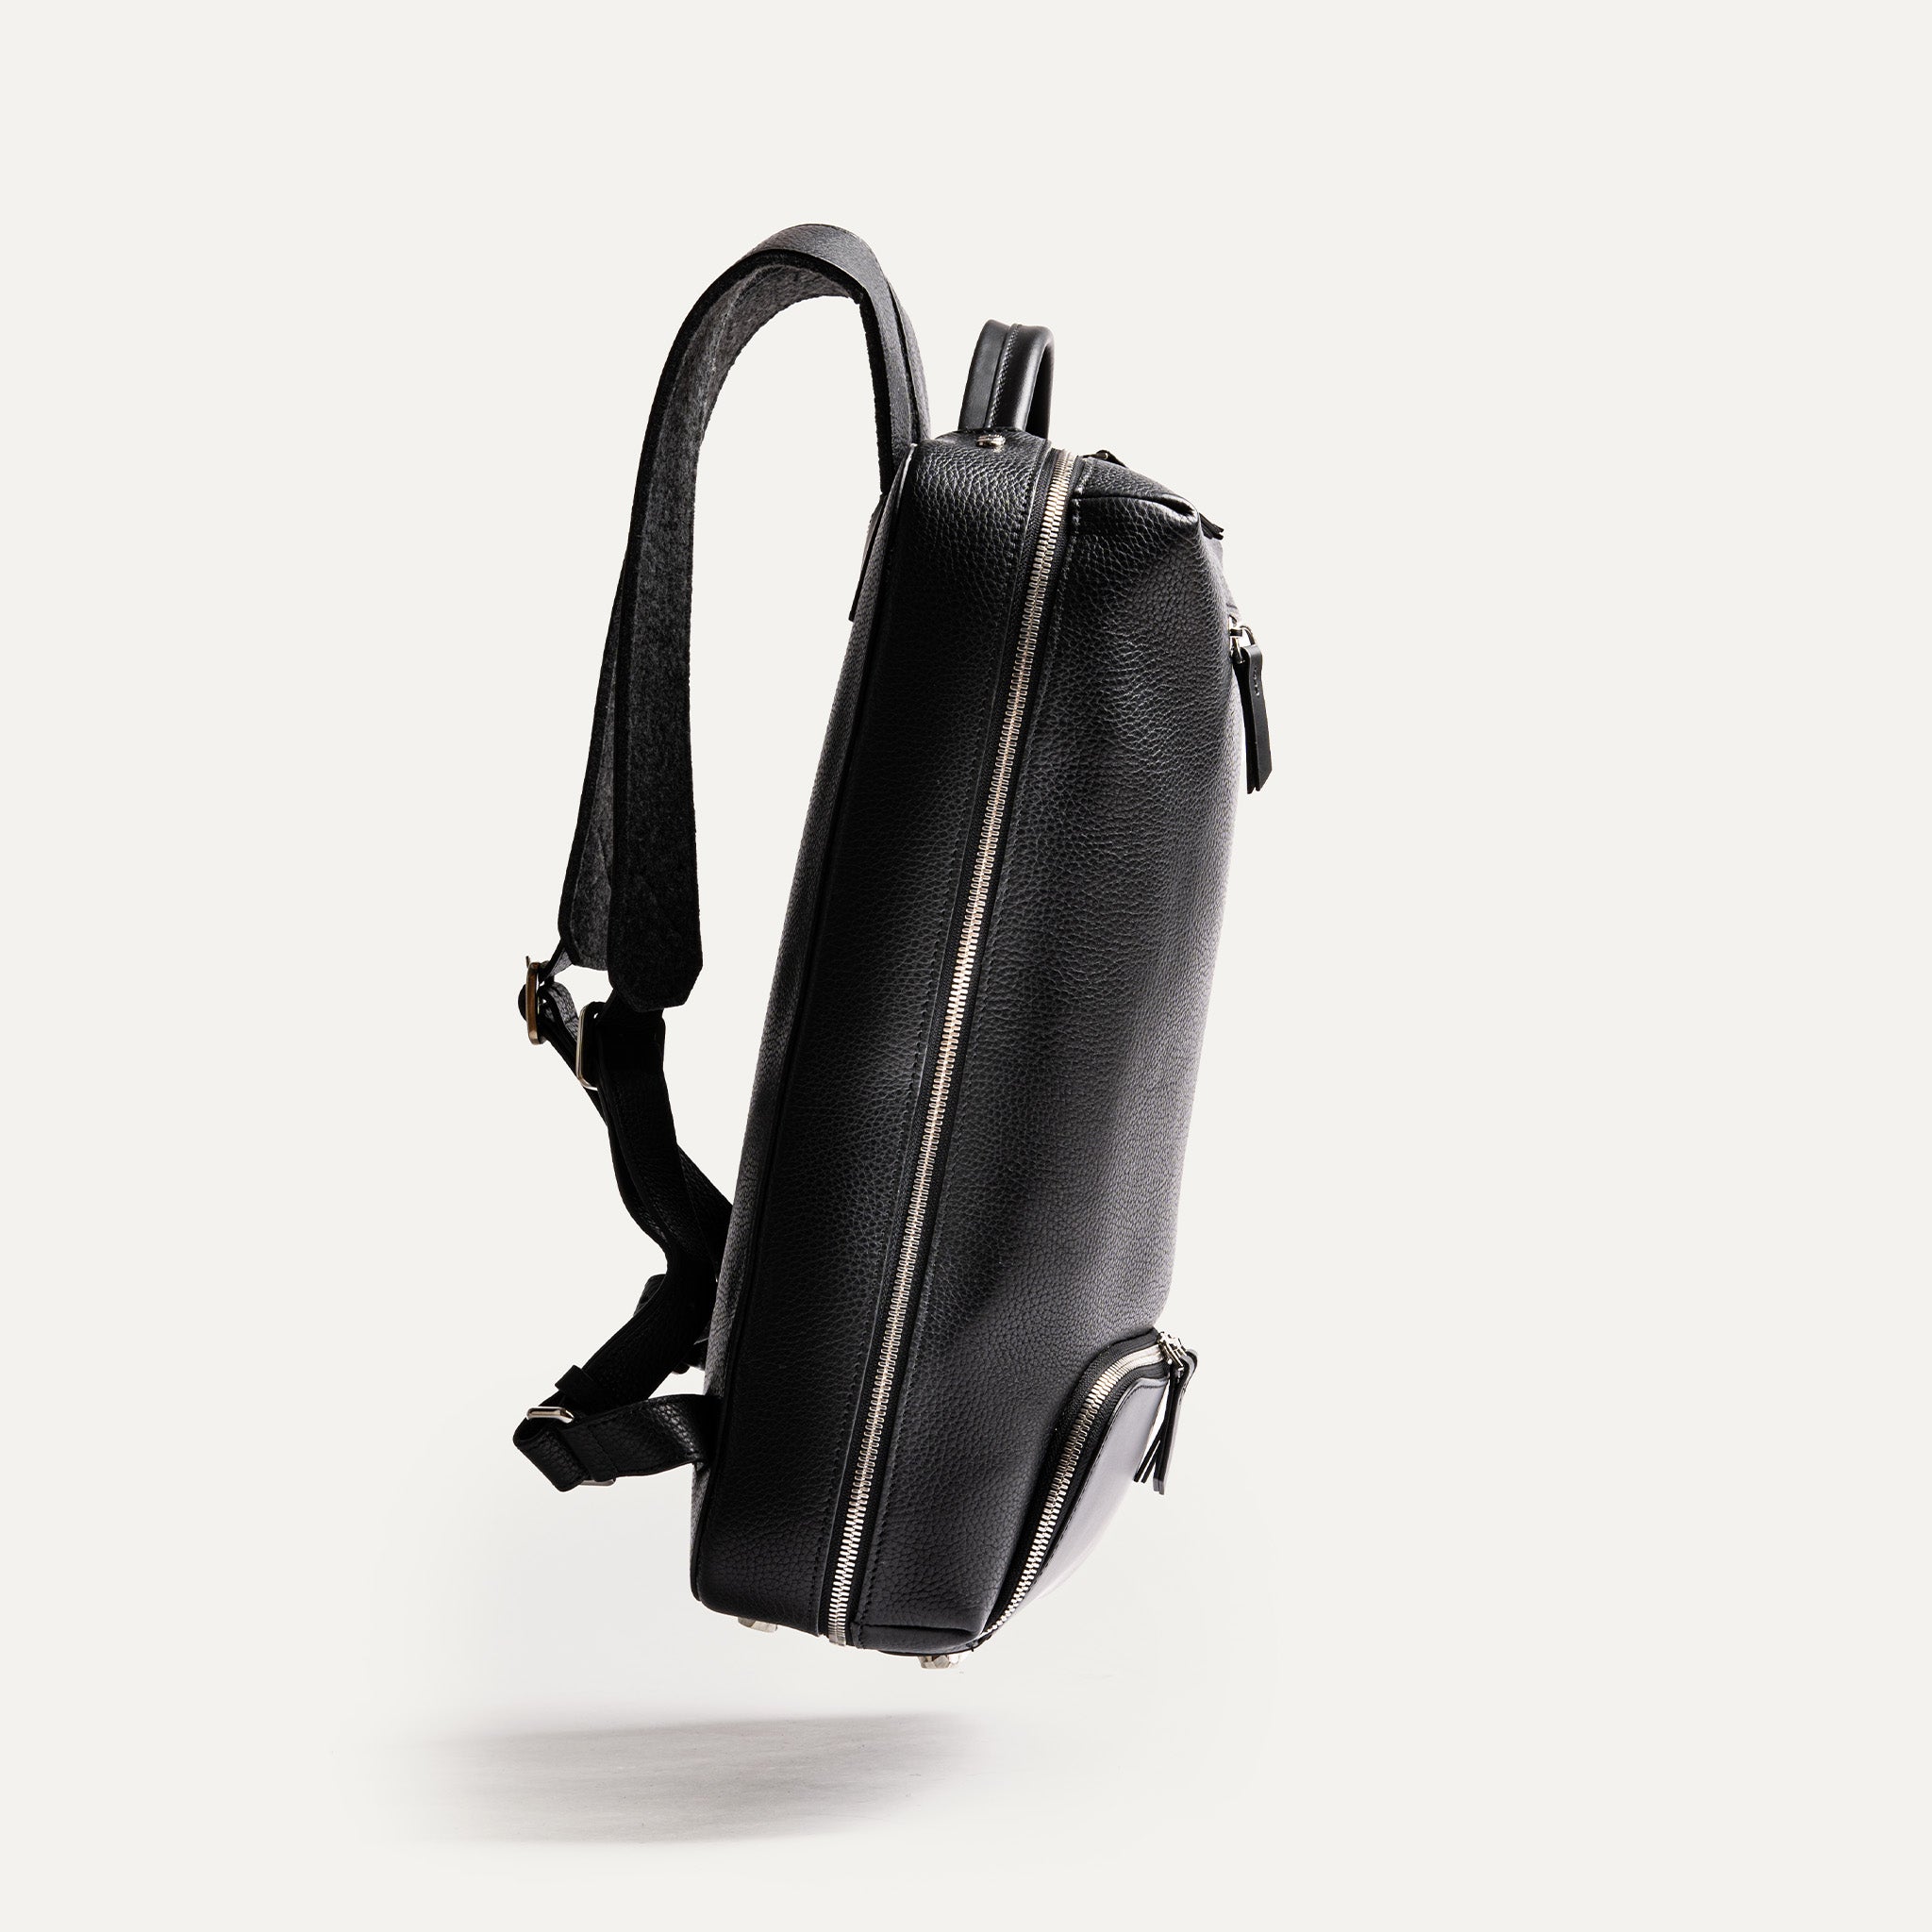 Conçu avec un style élégant et une fonctionnalité supérieure, ce sac à dos en cuir noir est l’accessoire de mode ultime il offre un mélange parfait de style et de fonctionnalités